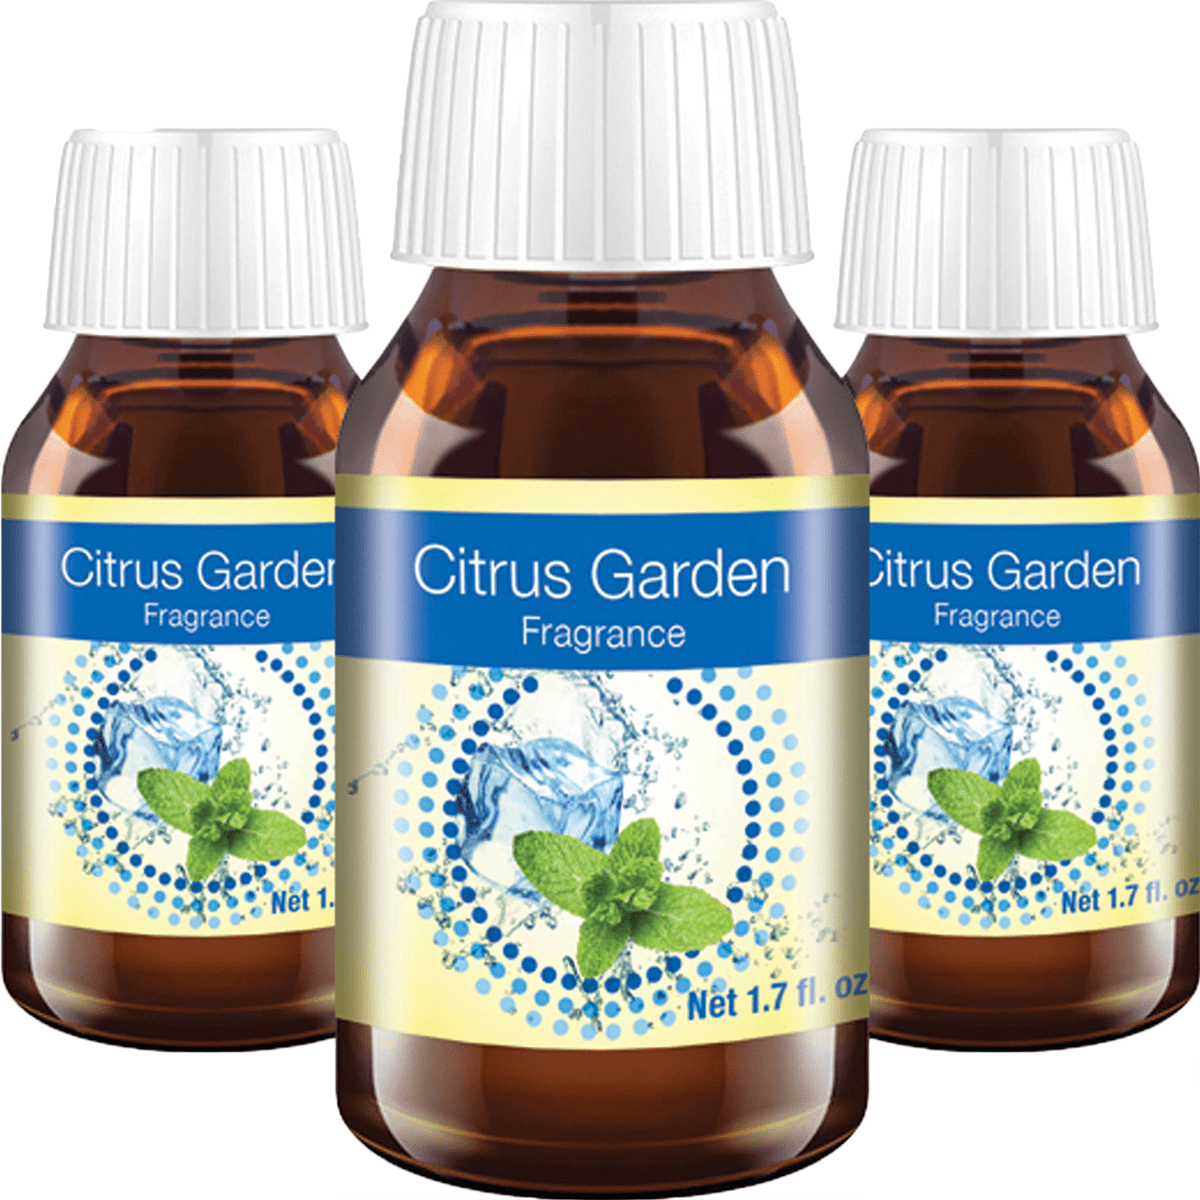 Venta Citrus Garden Fragrance - 3 Pack